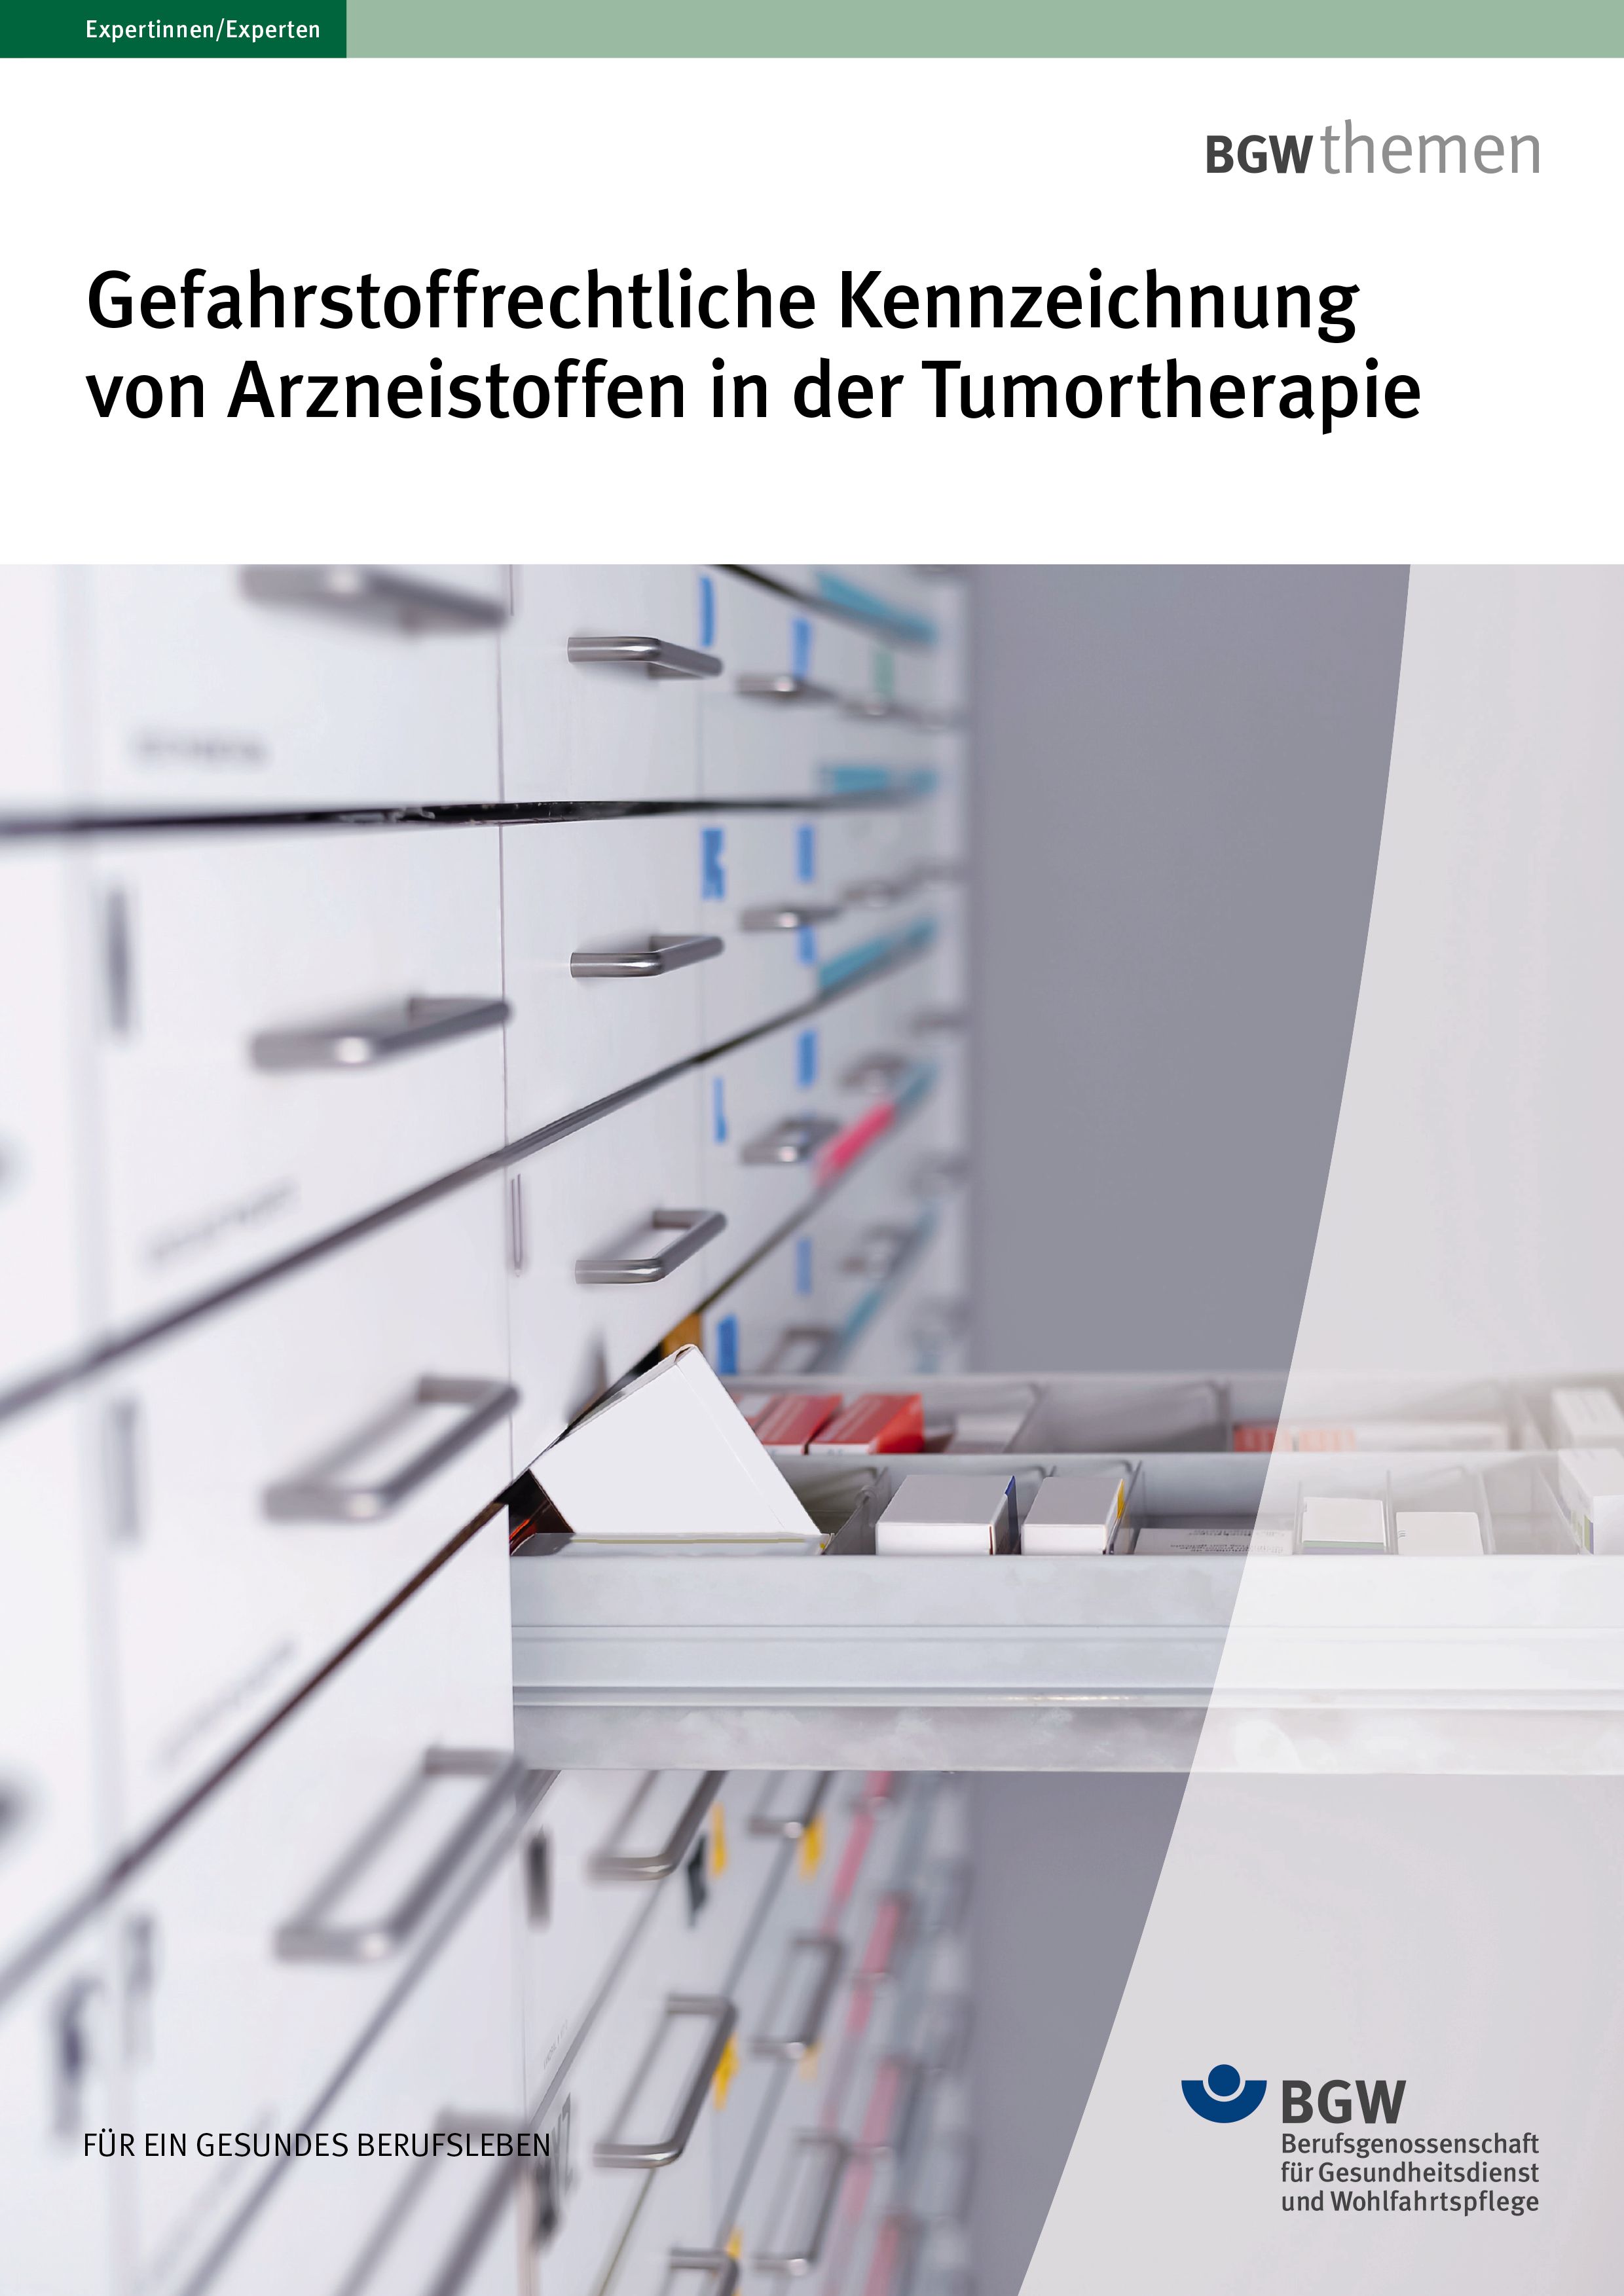 Titel Gefahrstoffrechtliche Kennzeichnung von Arzneistoffen in der Tumortherapie